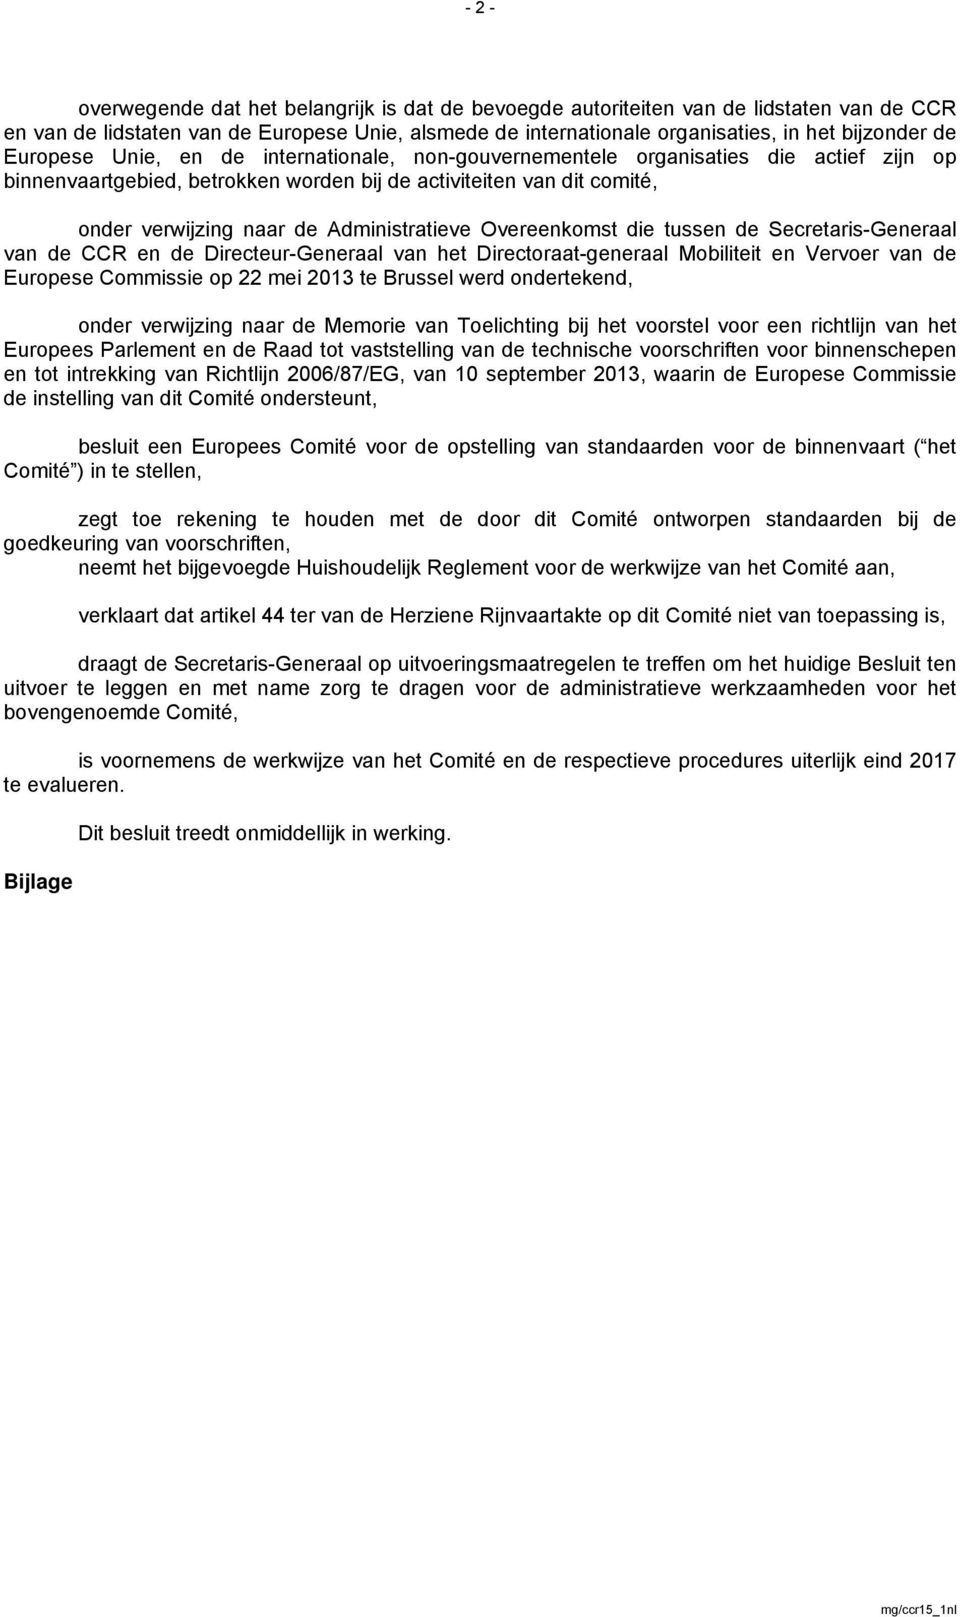 Administratieve Overeenkomst die tussen de Secretaris-Generaal van de CCR en de Directeur-Generaal van het Directoraat-generaal Mobiliteit en Vervoer van de Europese Commissie op 22 mei 2013 te